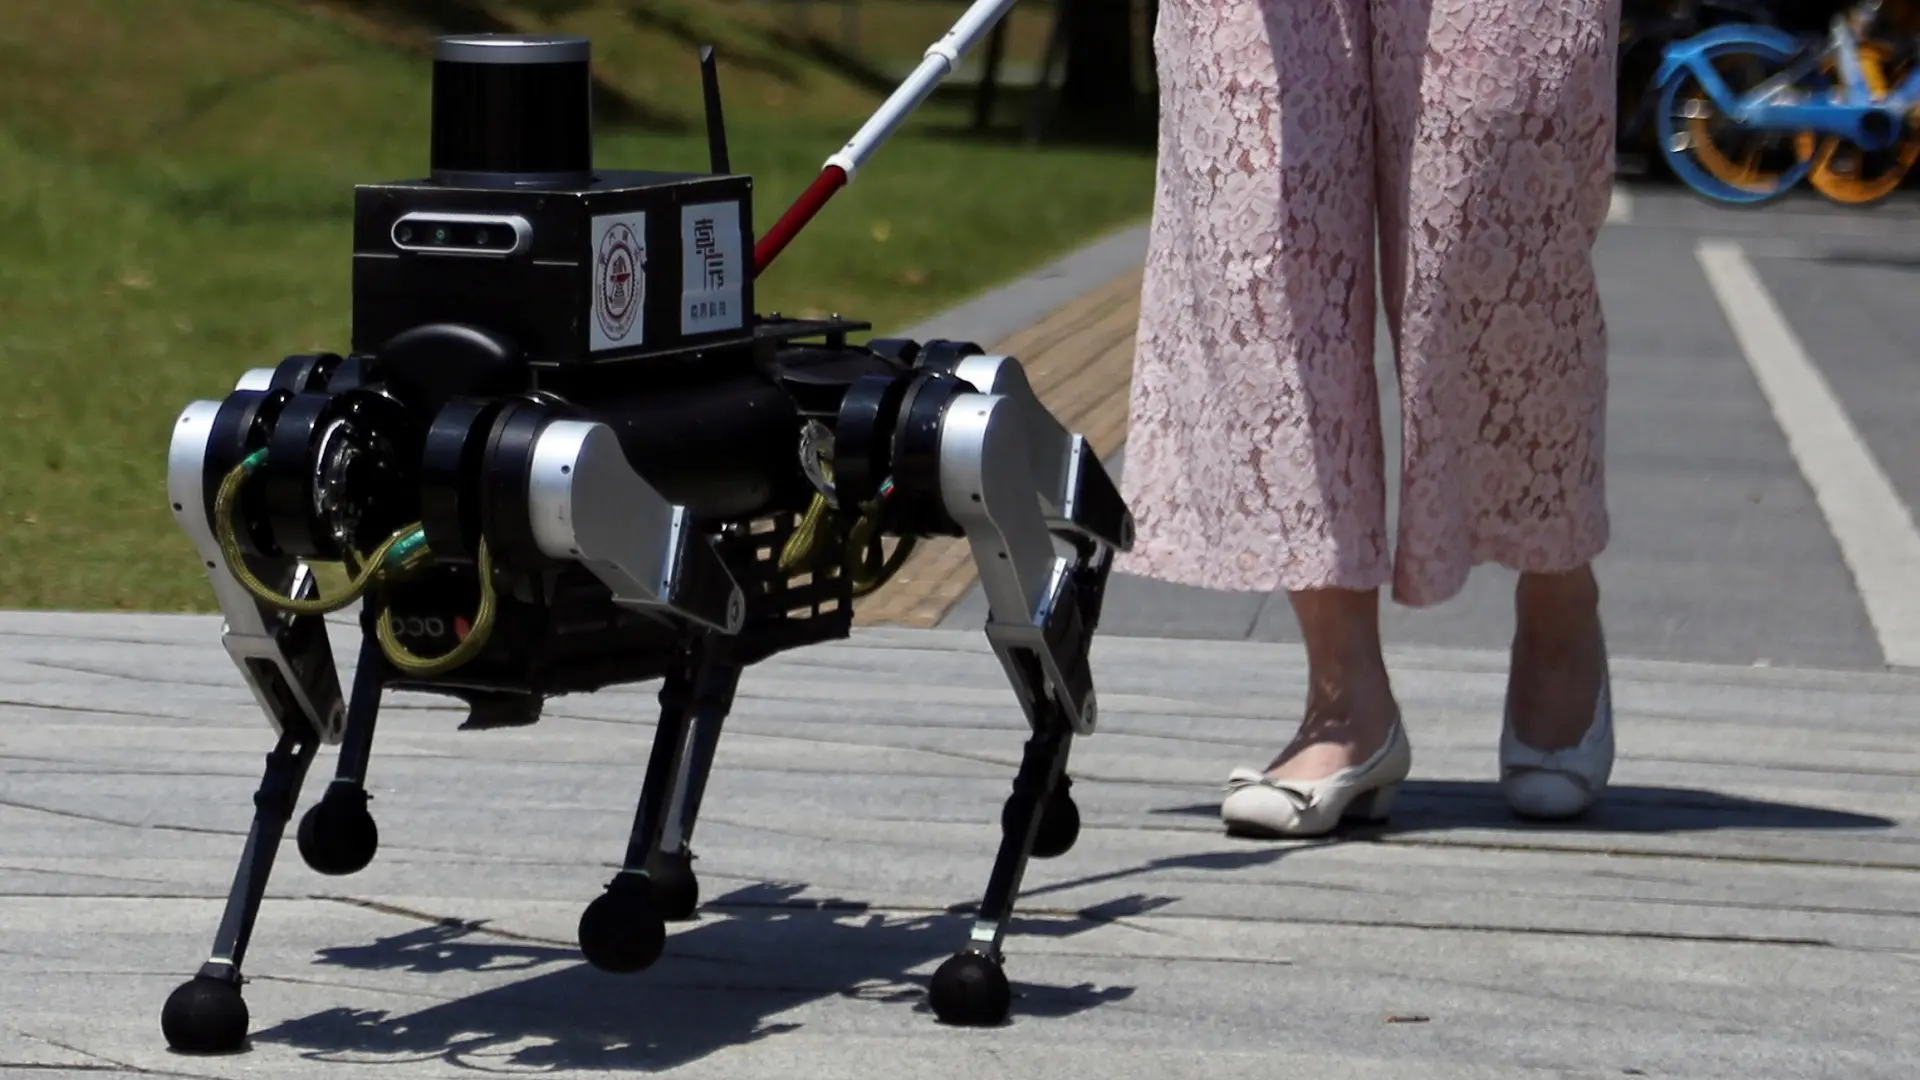 pas-robot sa Univerziteta Džiao Tong u šangaju, pas-robot vodič za pomoć slabovidima ljudima oštećenog vida, šangaj, kina - 18 jun 2024 - Reuters-6682825bc690a.webp